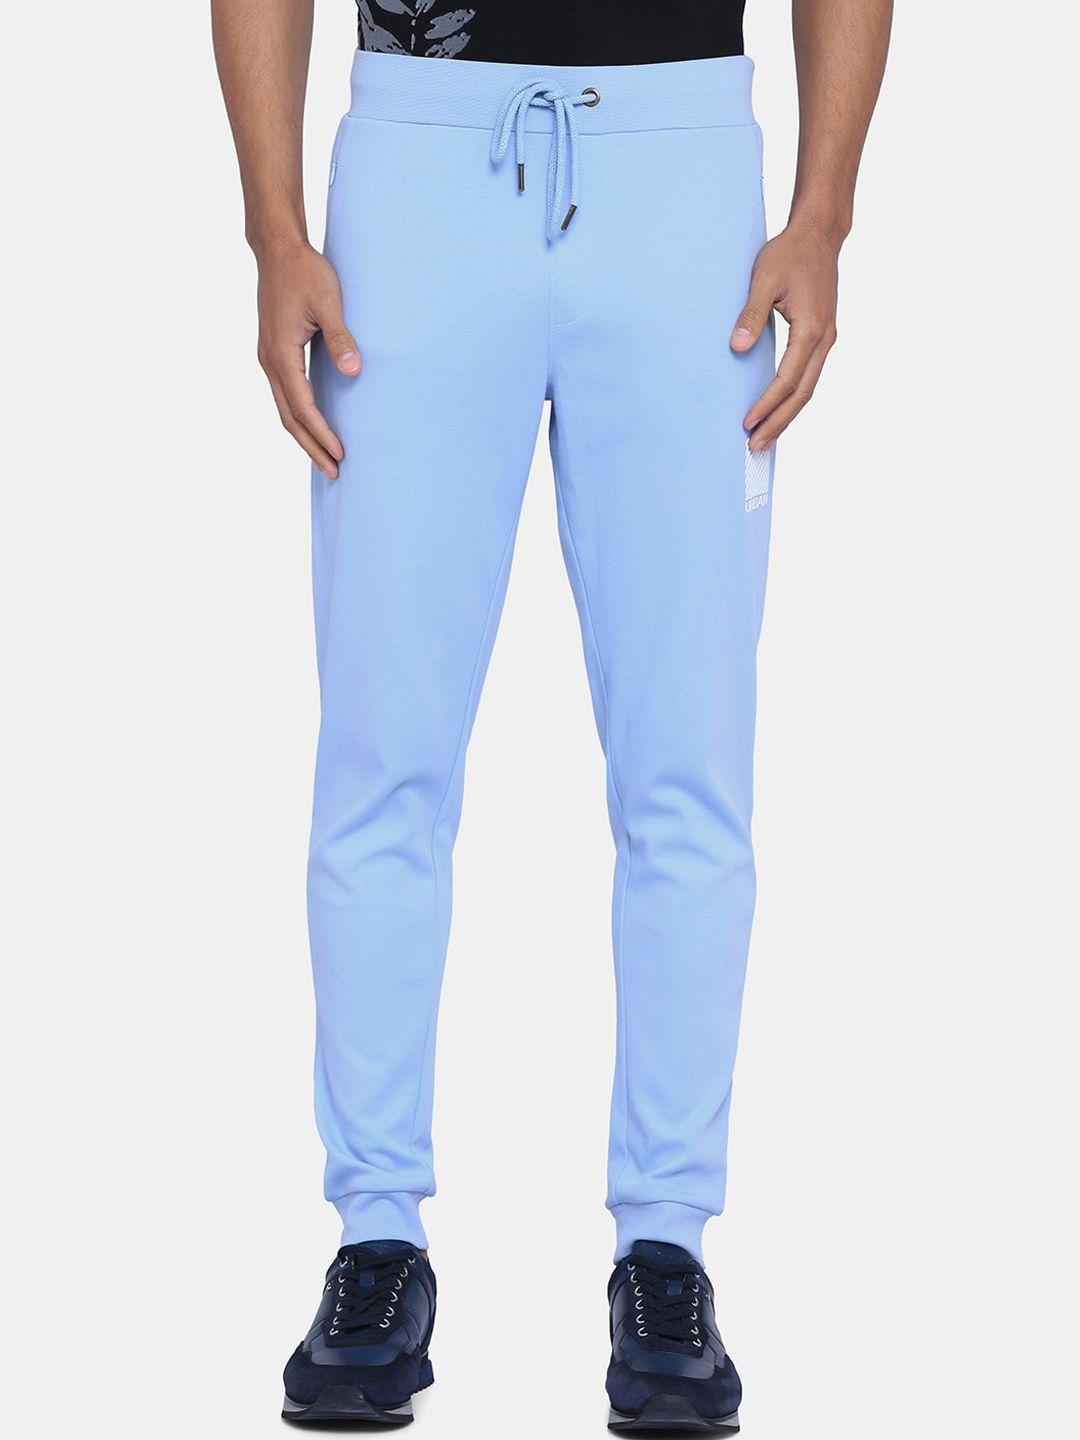 blackberrys-men-blue-solid-cotton-track-pants